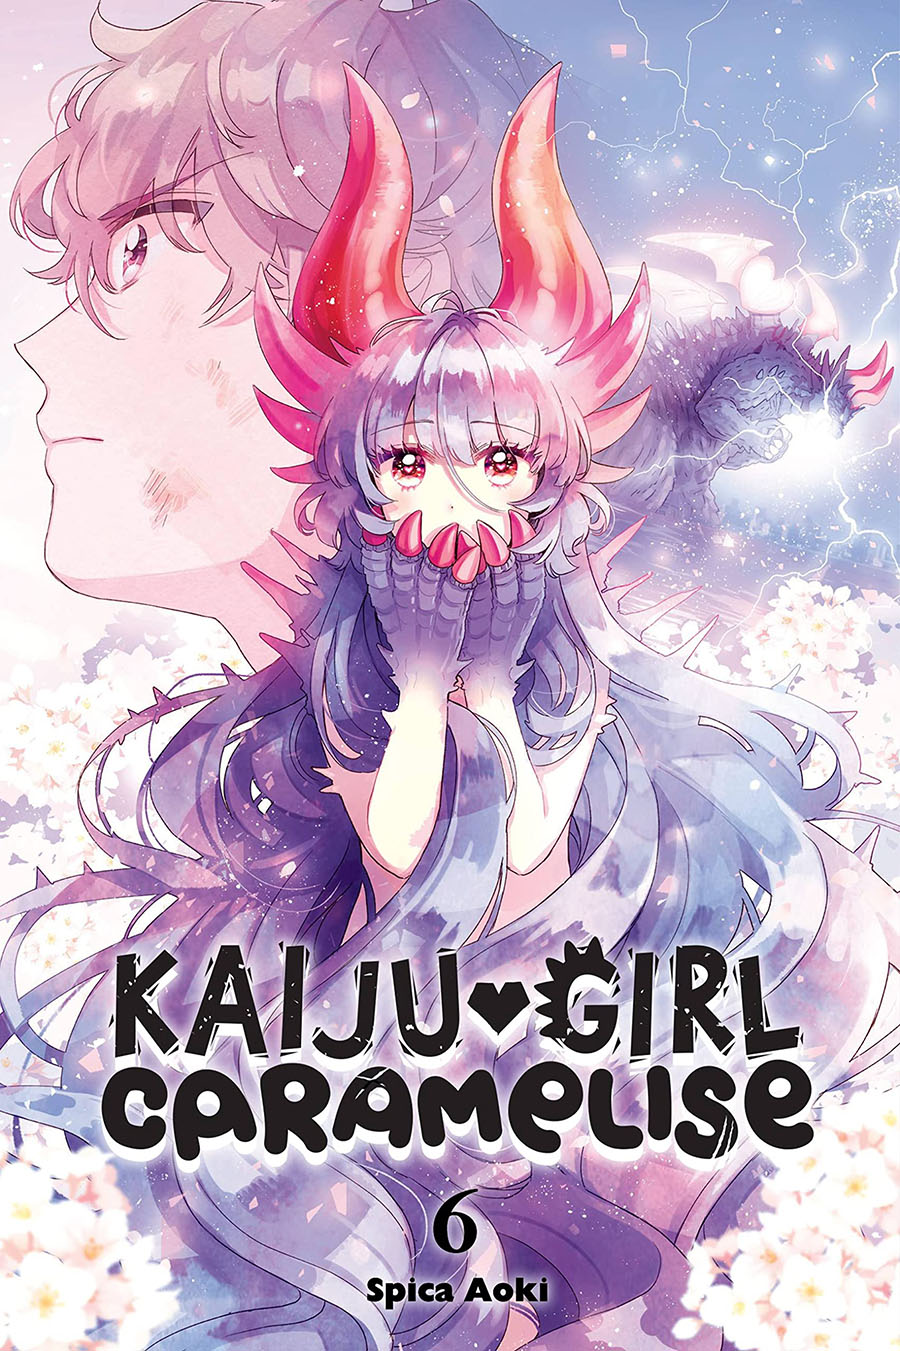 Kaiju Girl Caramelise Vol 6 GN